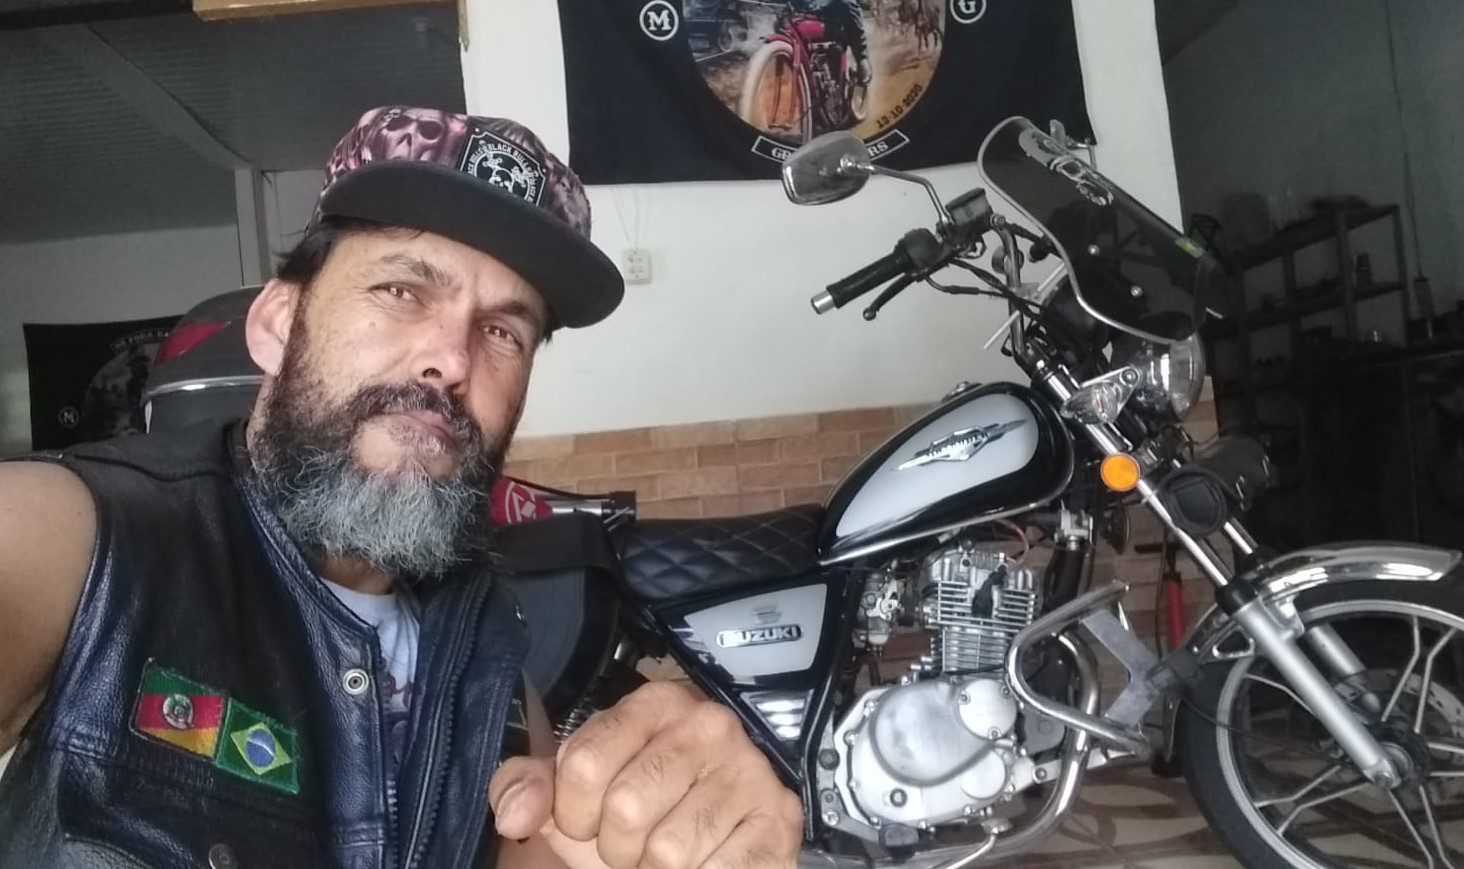 Paixão por motociclismo e perfil solidário uniu grupo em Gravataí